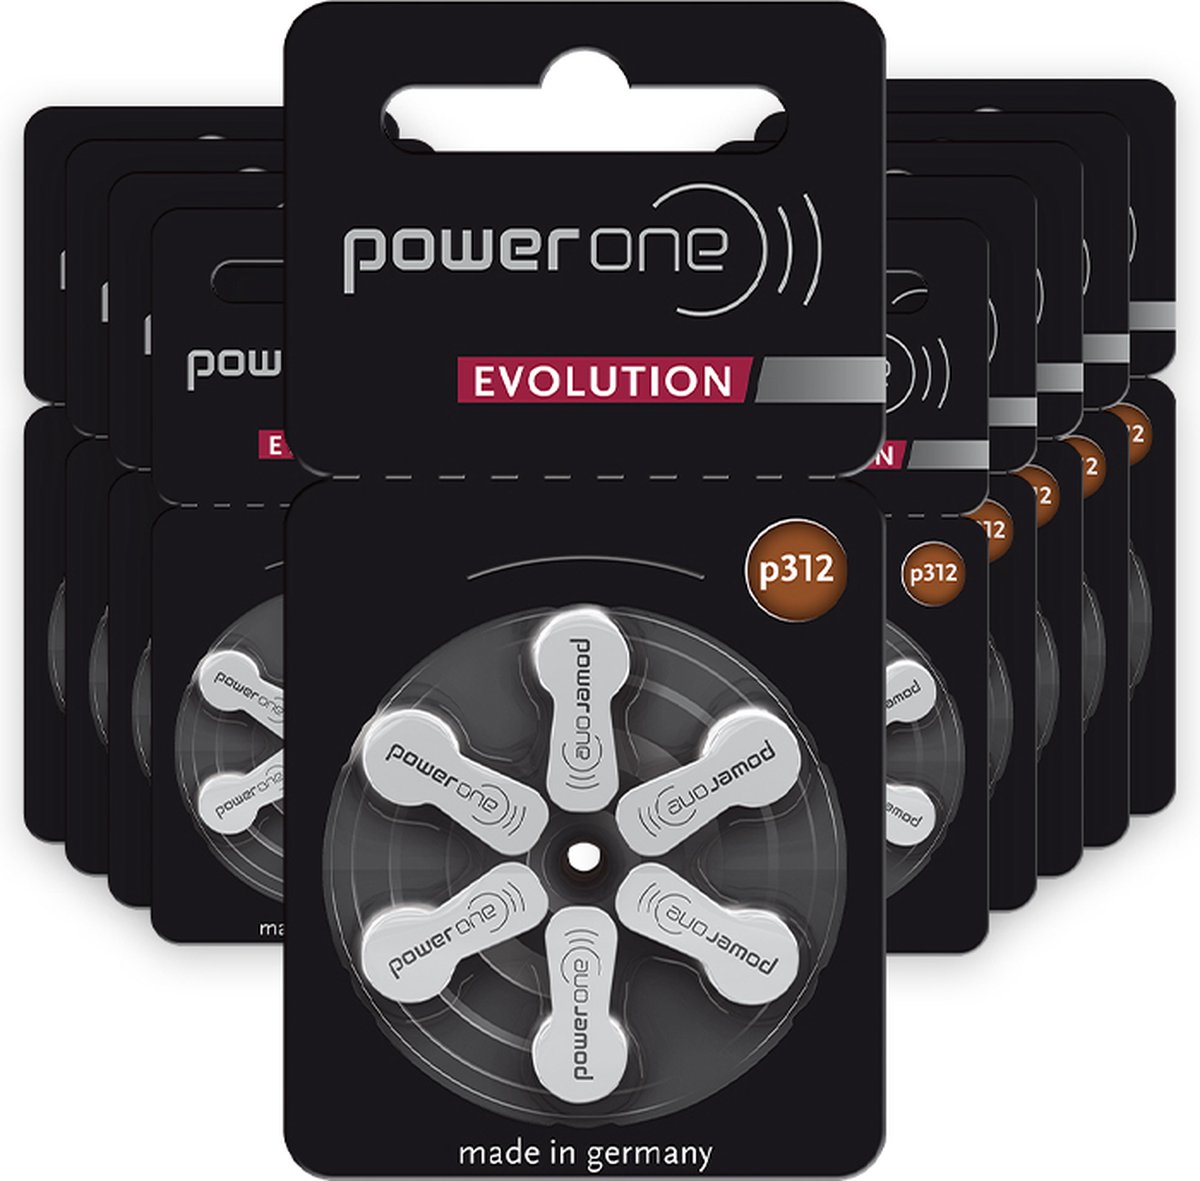 Power one Evolution P312 - hoortoestel batterijen met bruine sticker